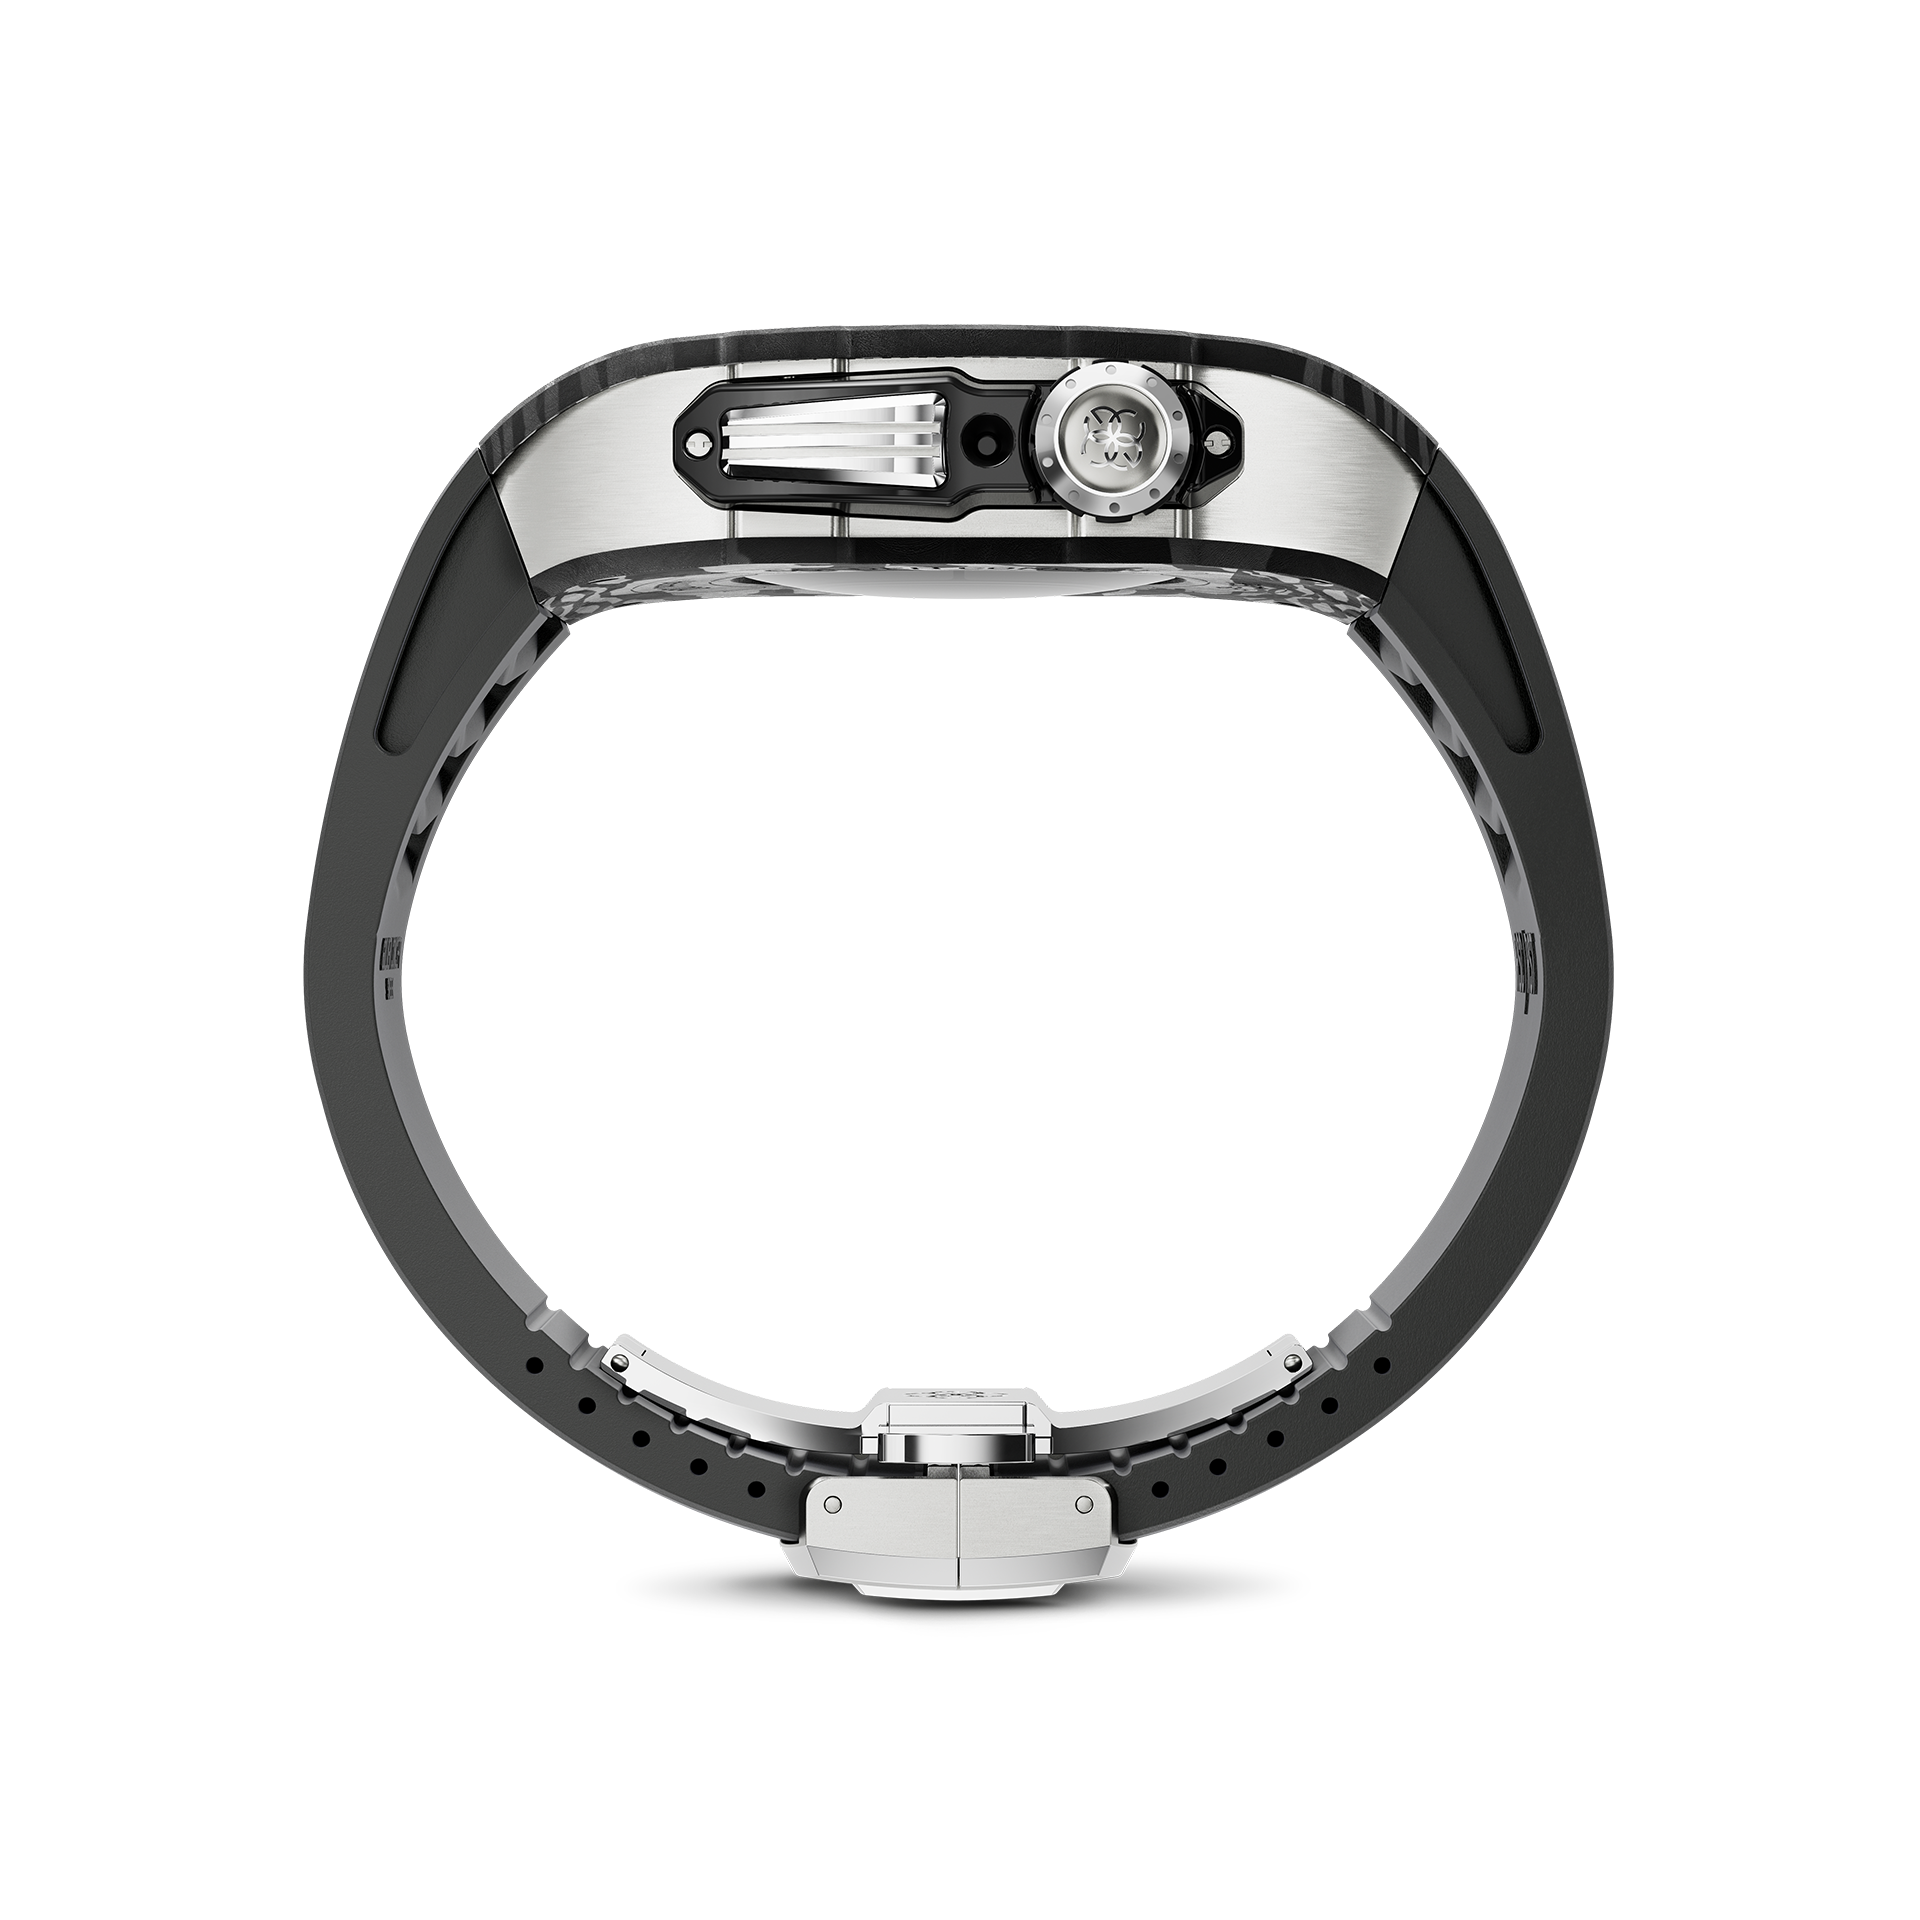 golden concept carbon & titanium black/silver 45mm apple watch cases 400054 40000003